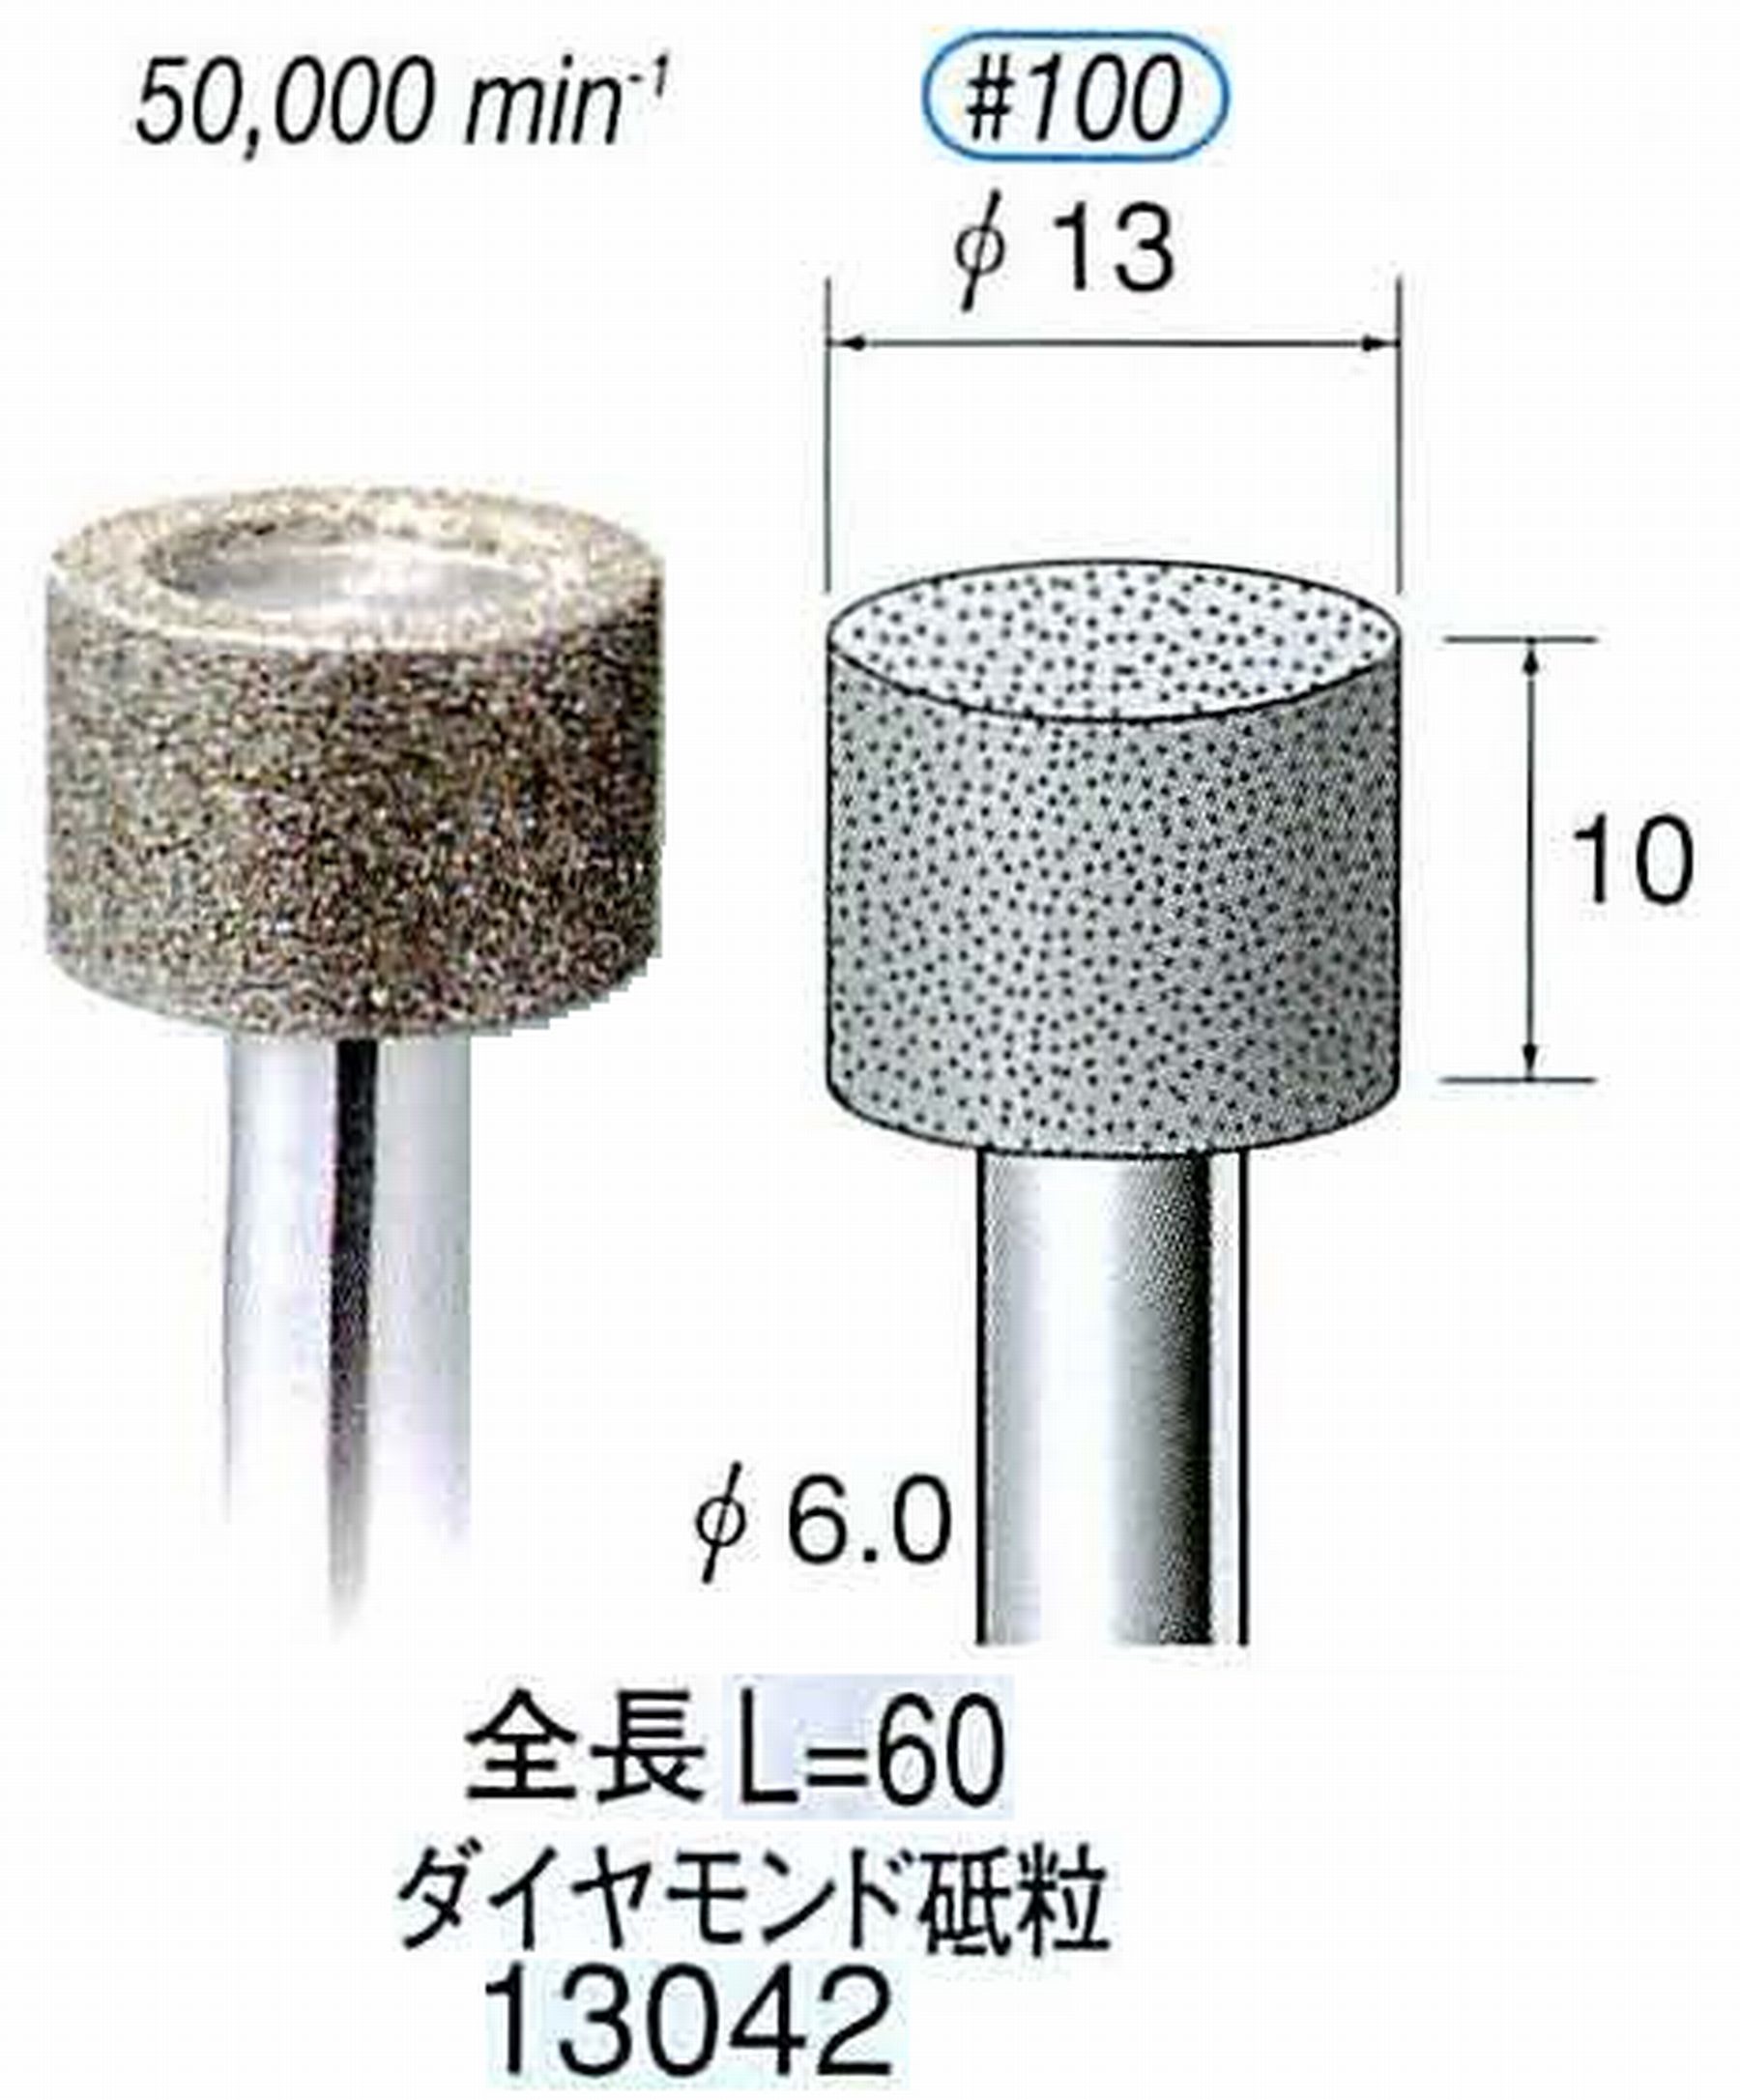 ナカニシ/NAKANISHI 電着ダイヤモンド ダイヤモンド砥粒 軸径(シャンク)φ6.0mm 13042